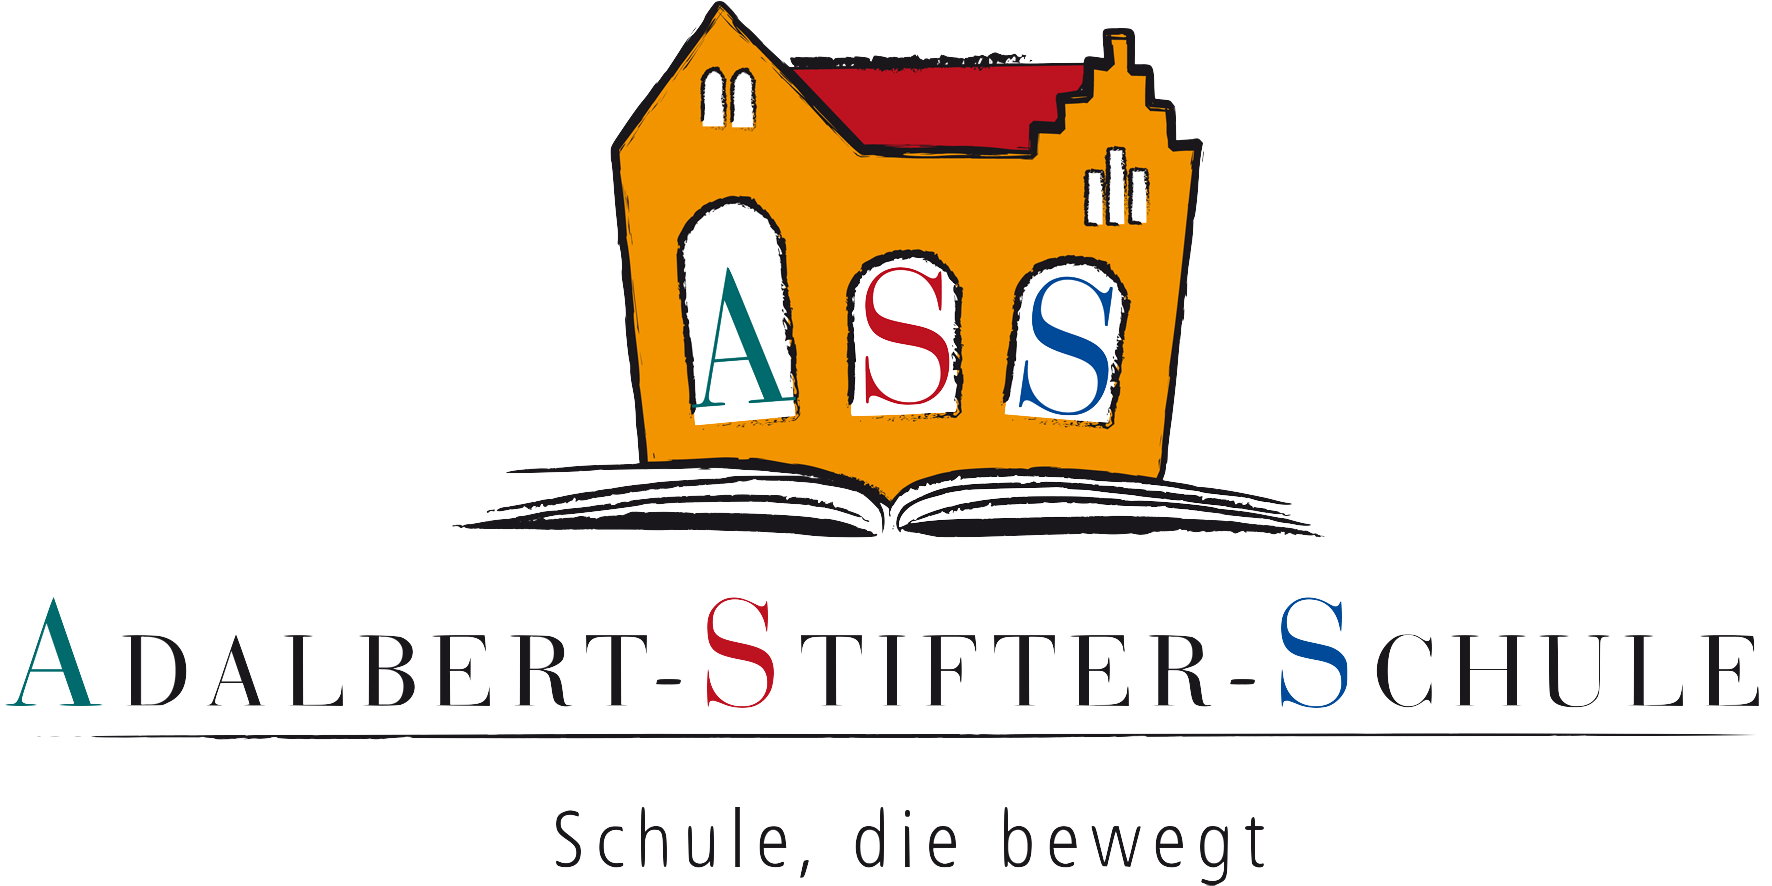 Logo ASS